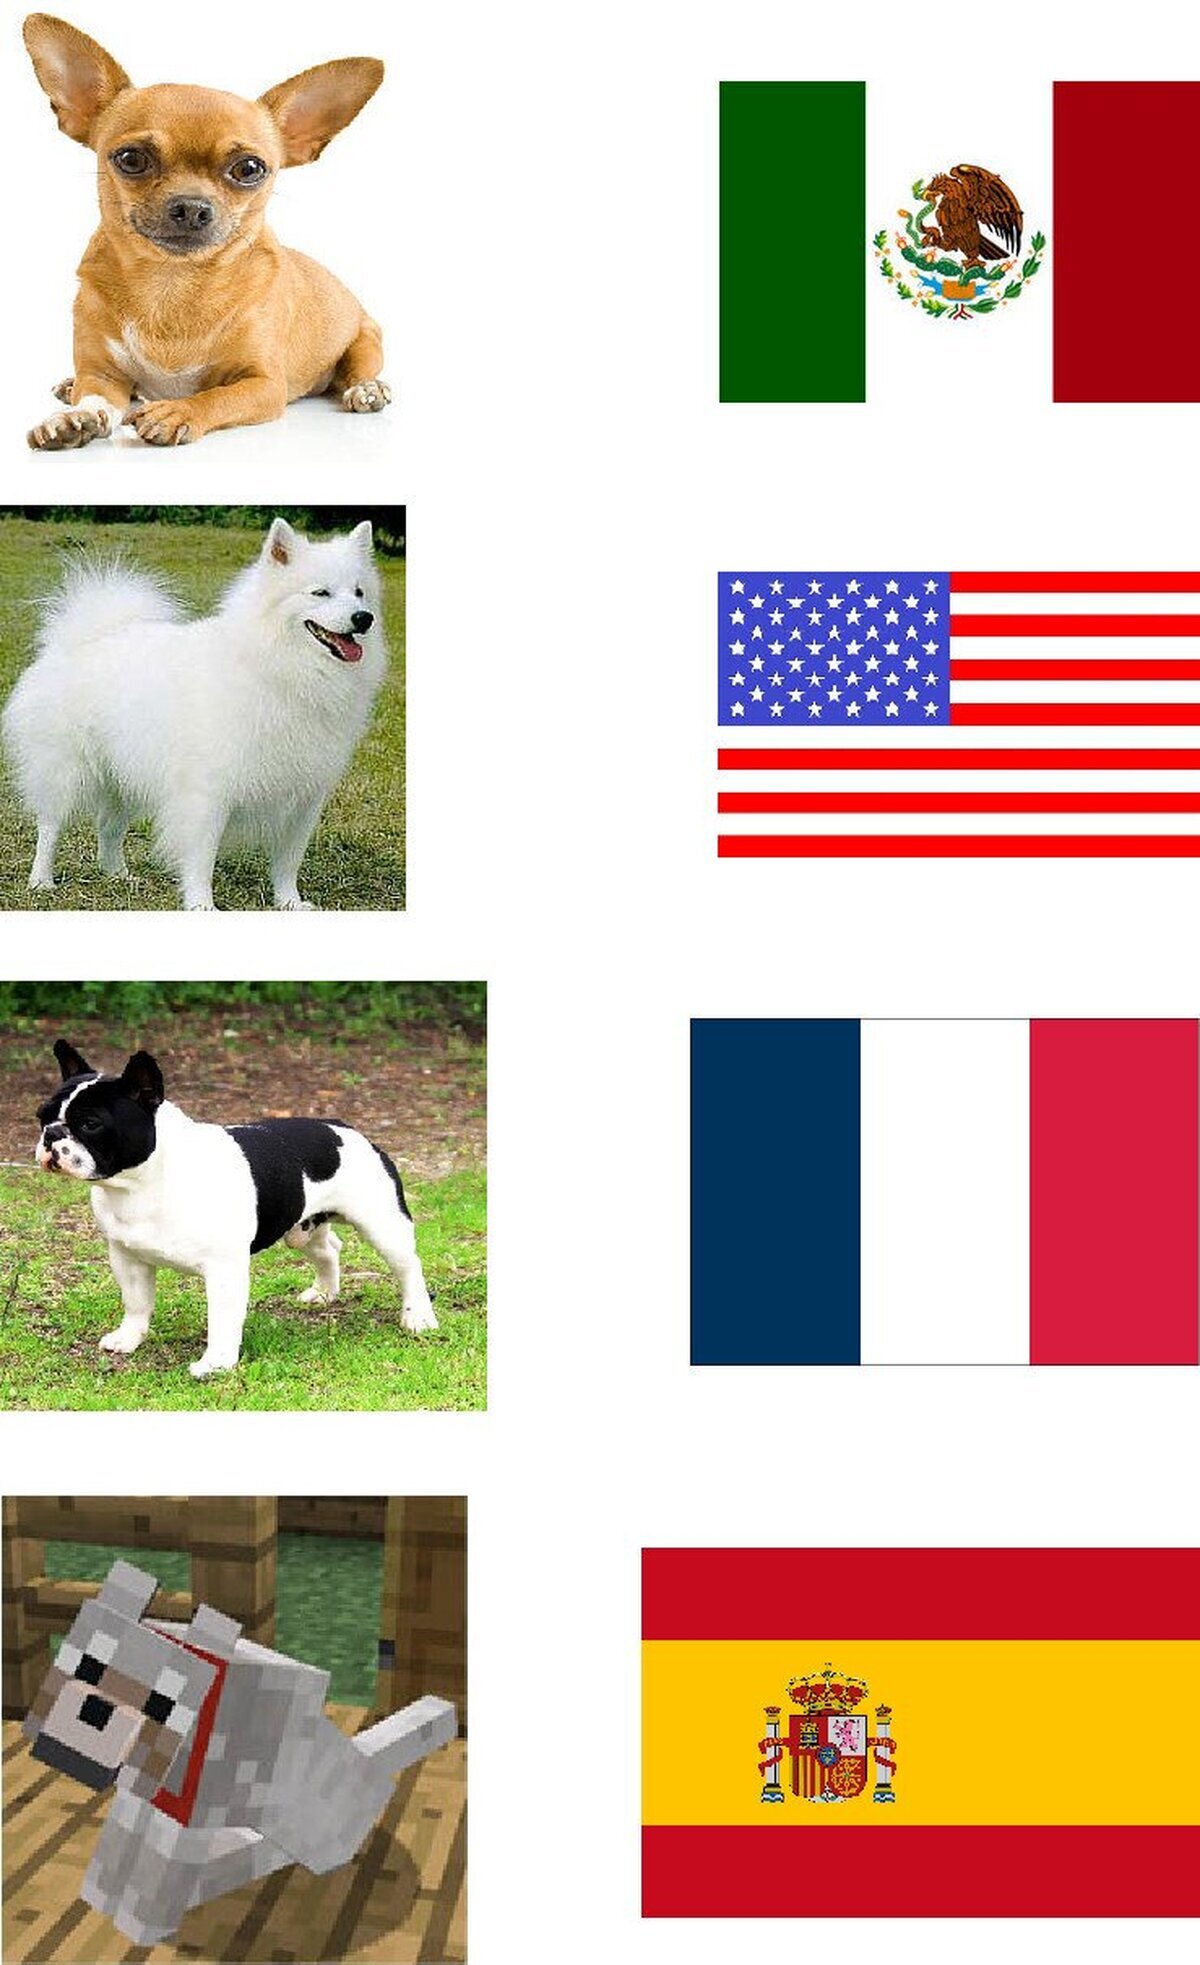 Los perros en países diferentes